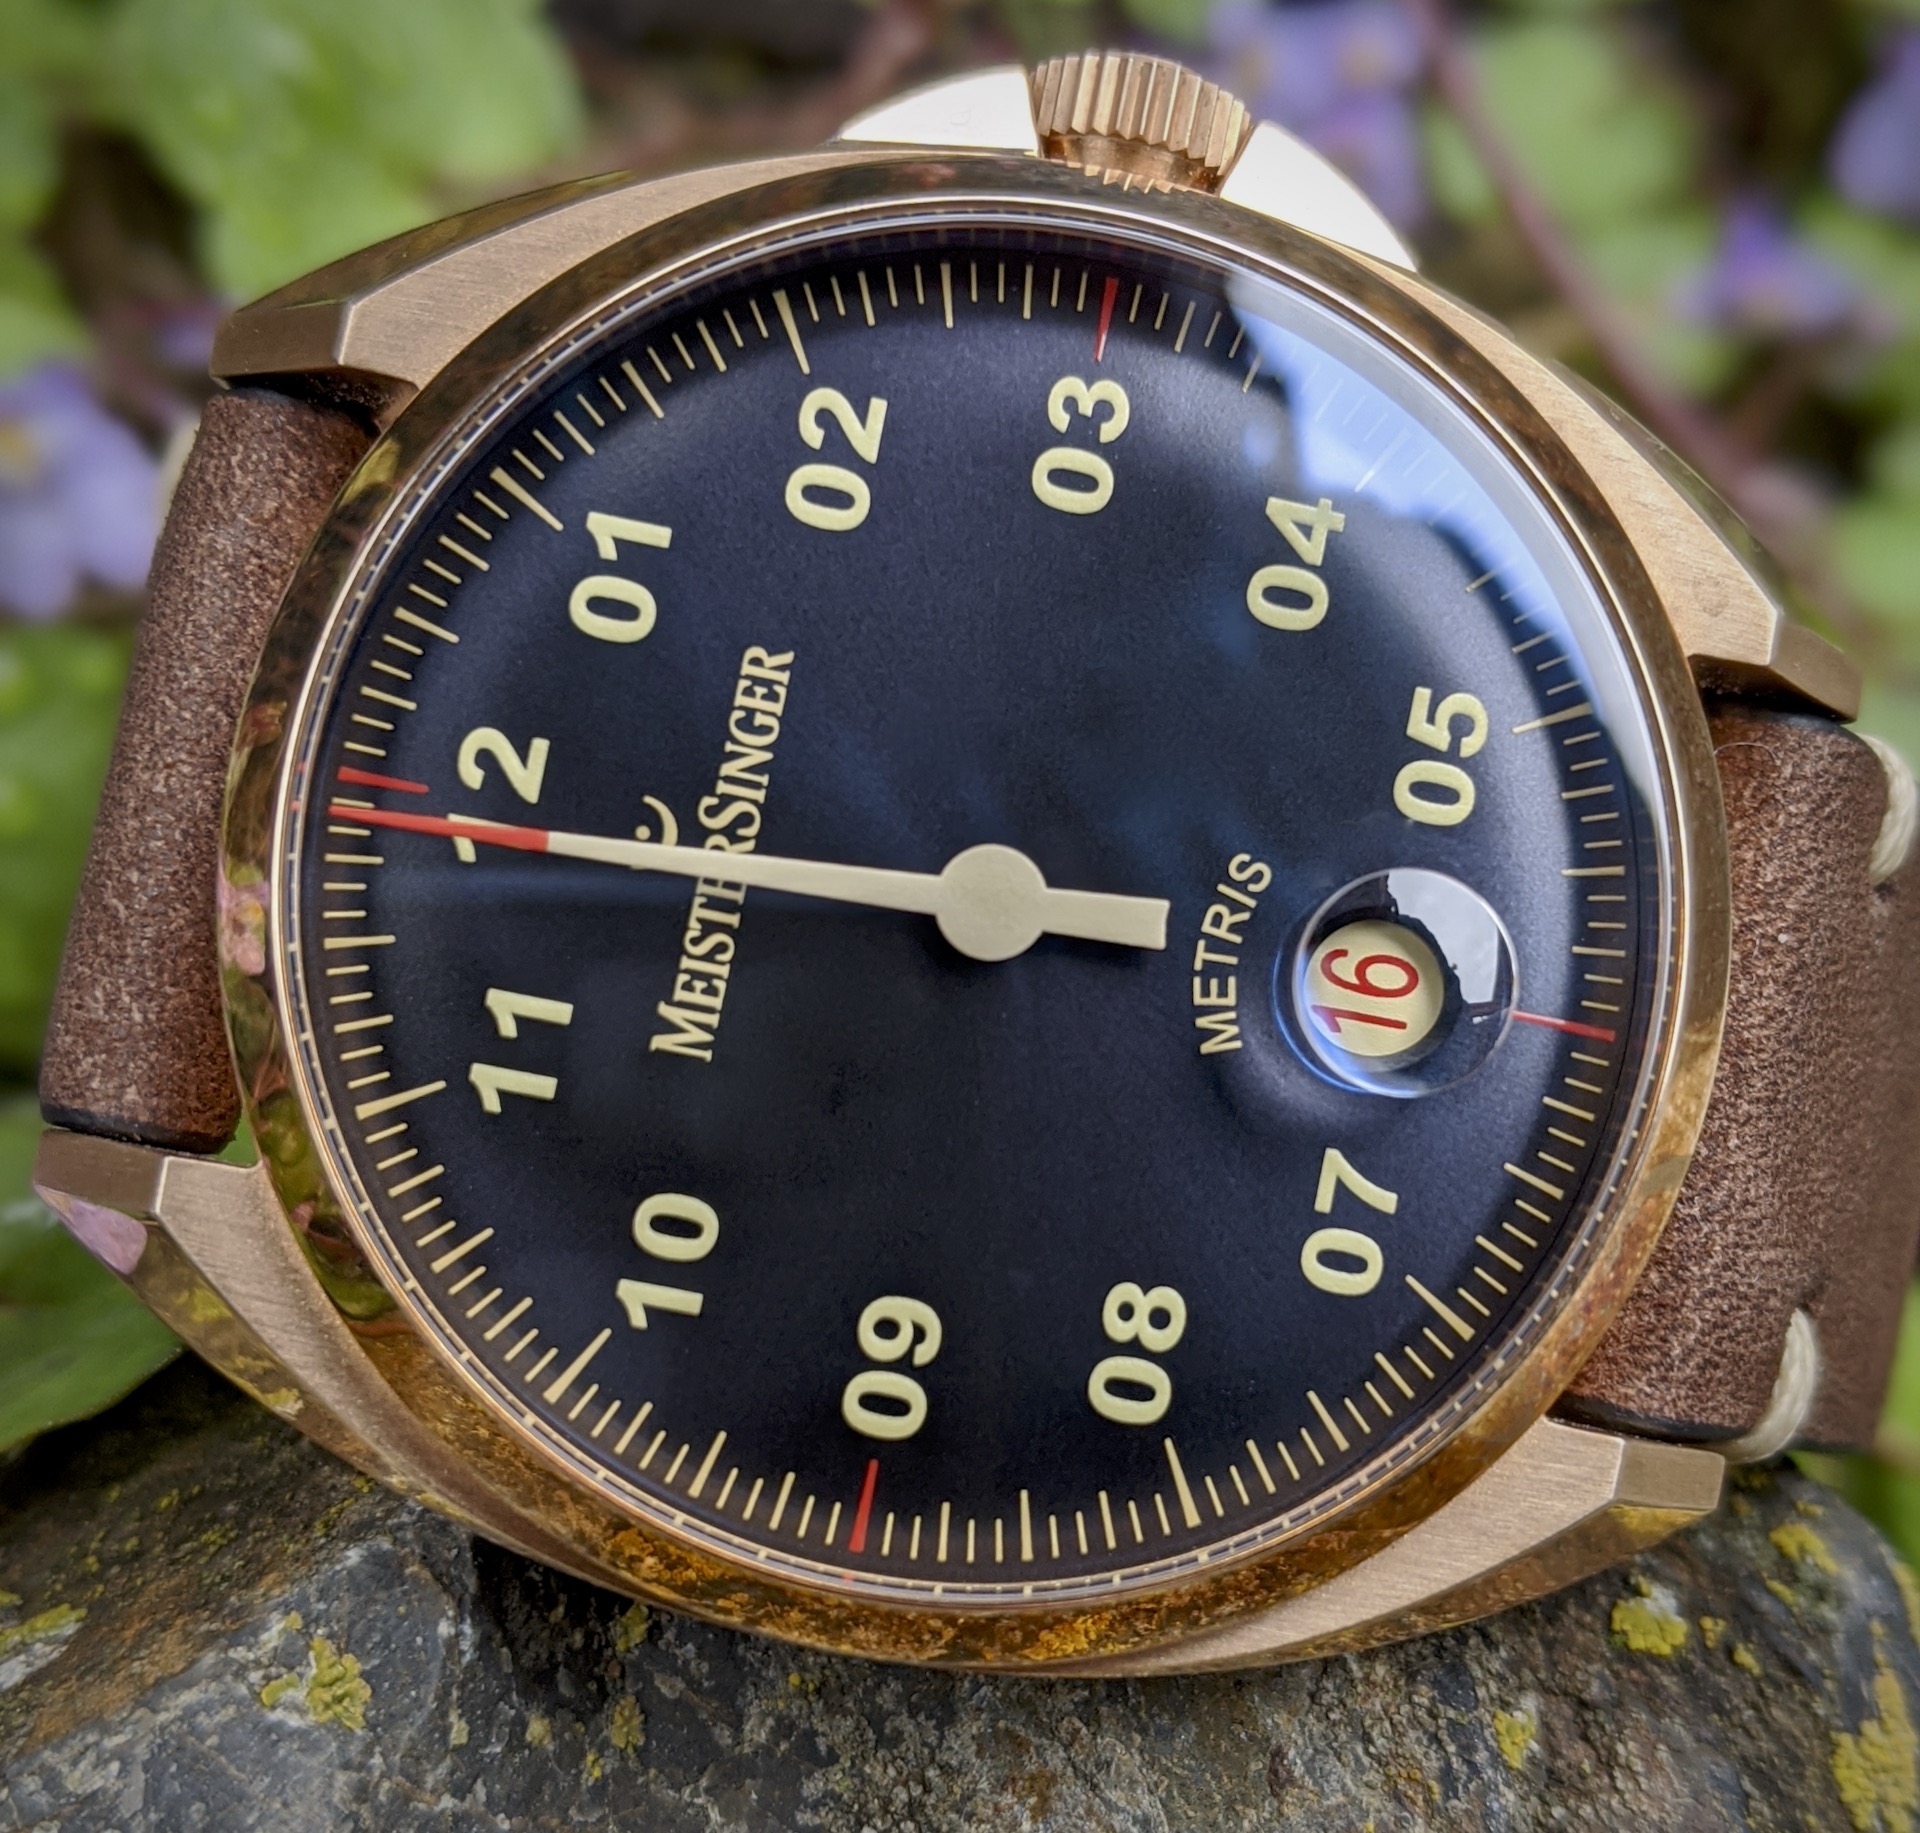 MeisterSinger Metris Bronze Watch Review